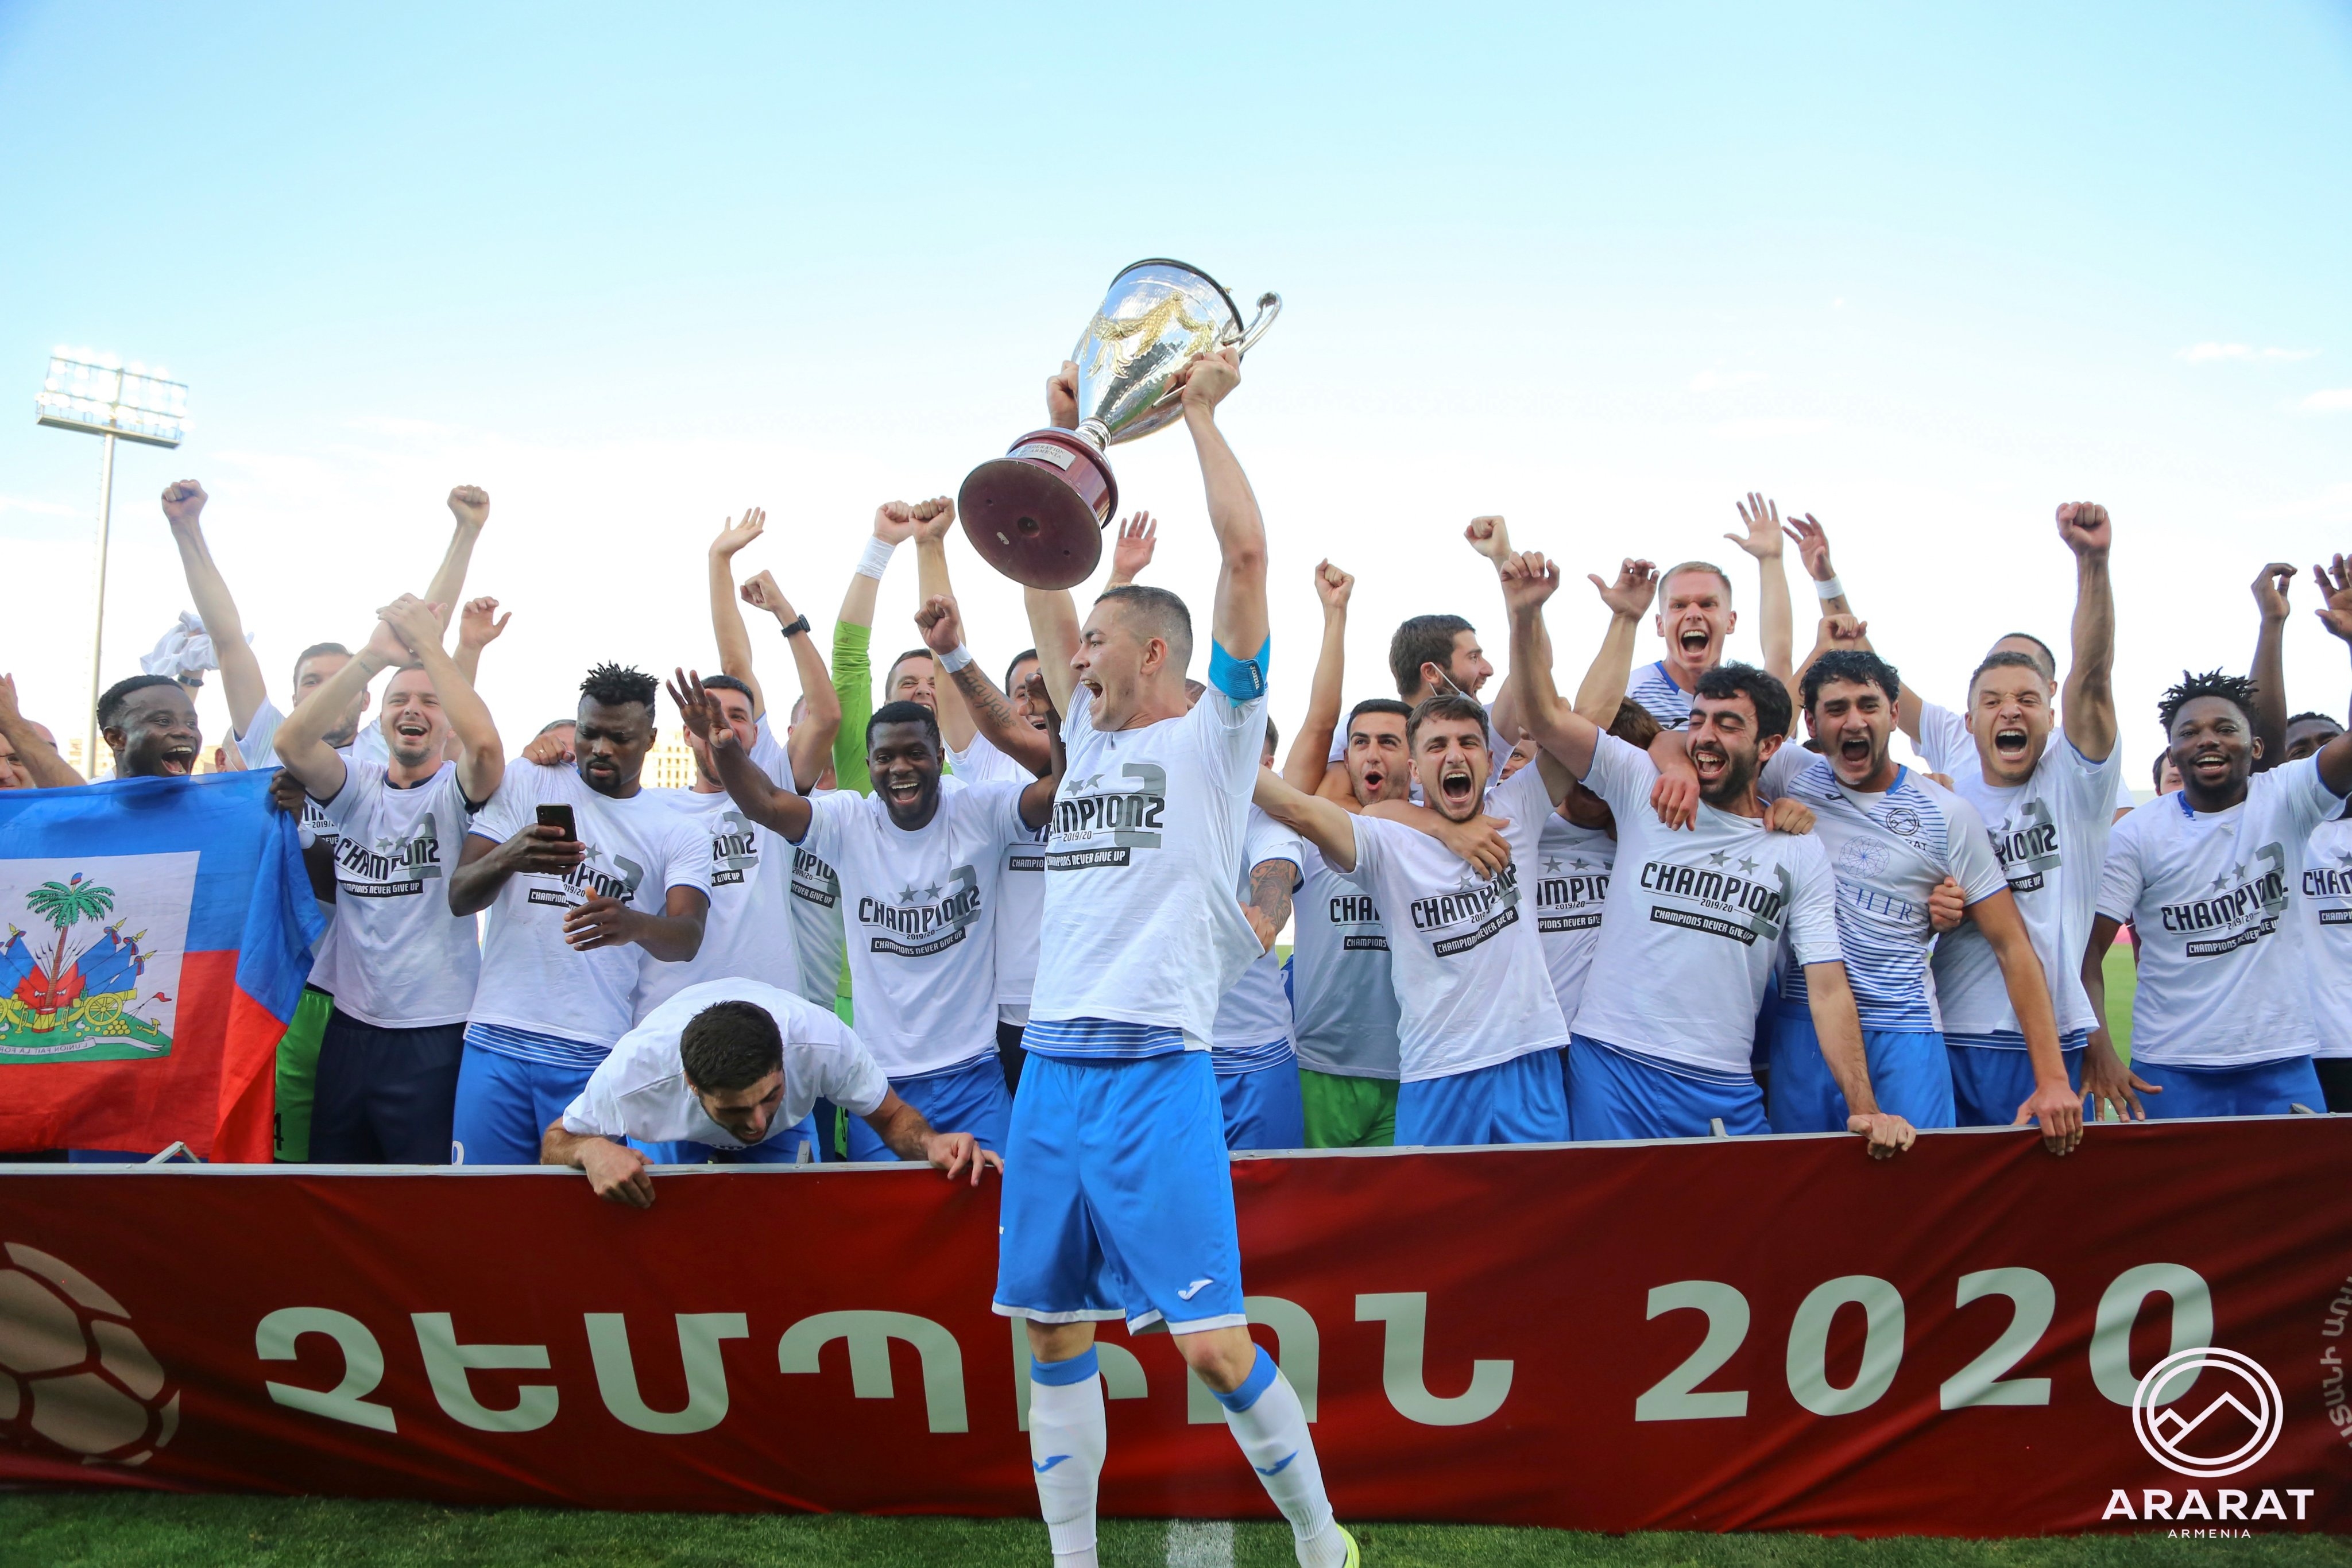 Арарат-Армения стана шампион в Армения за втора поредна година. В